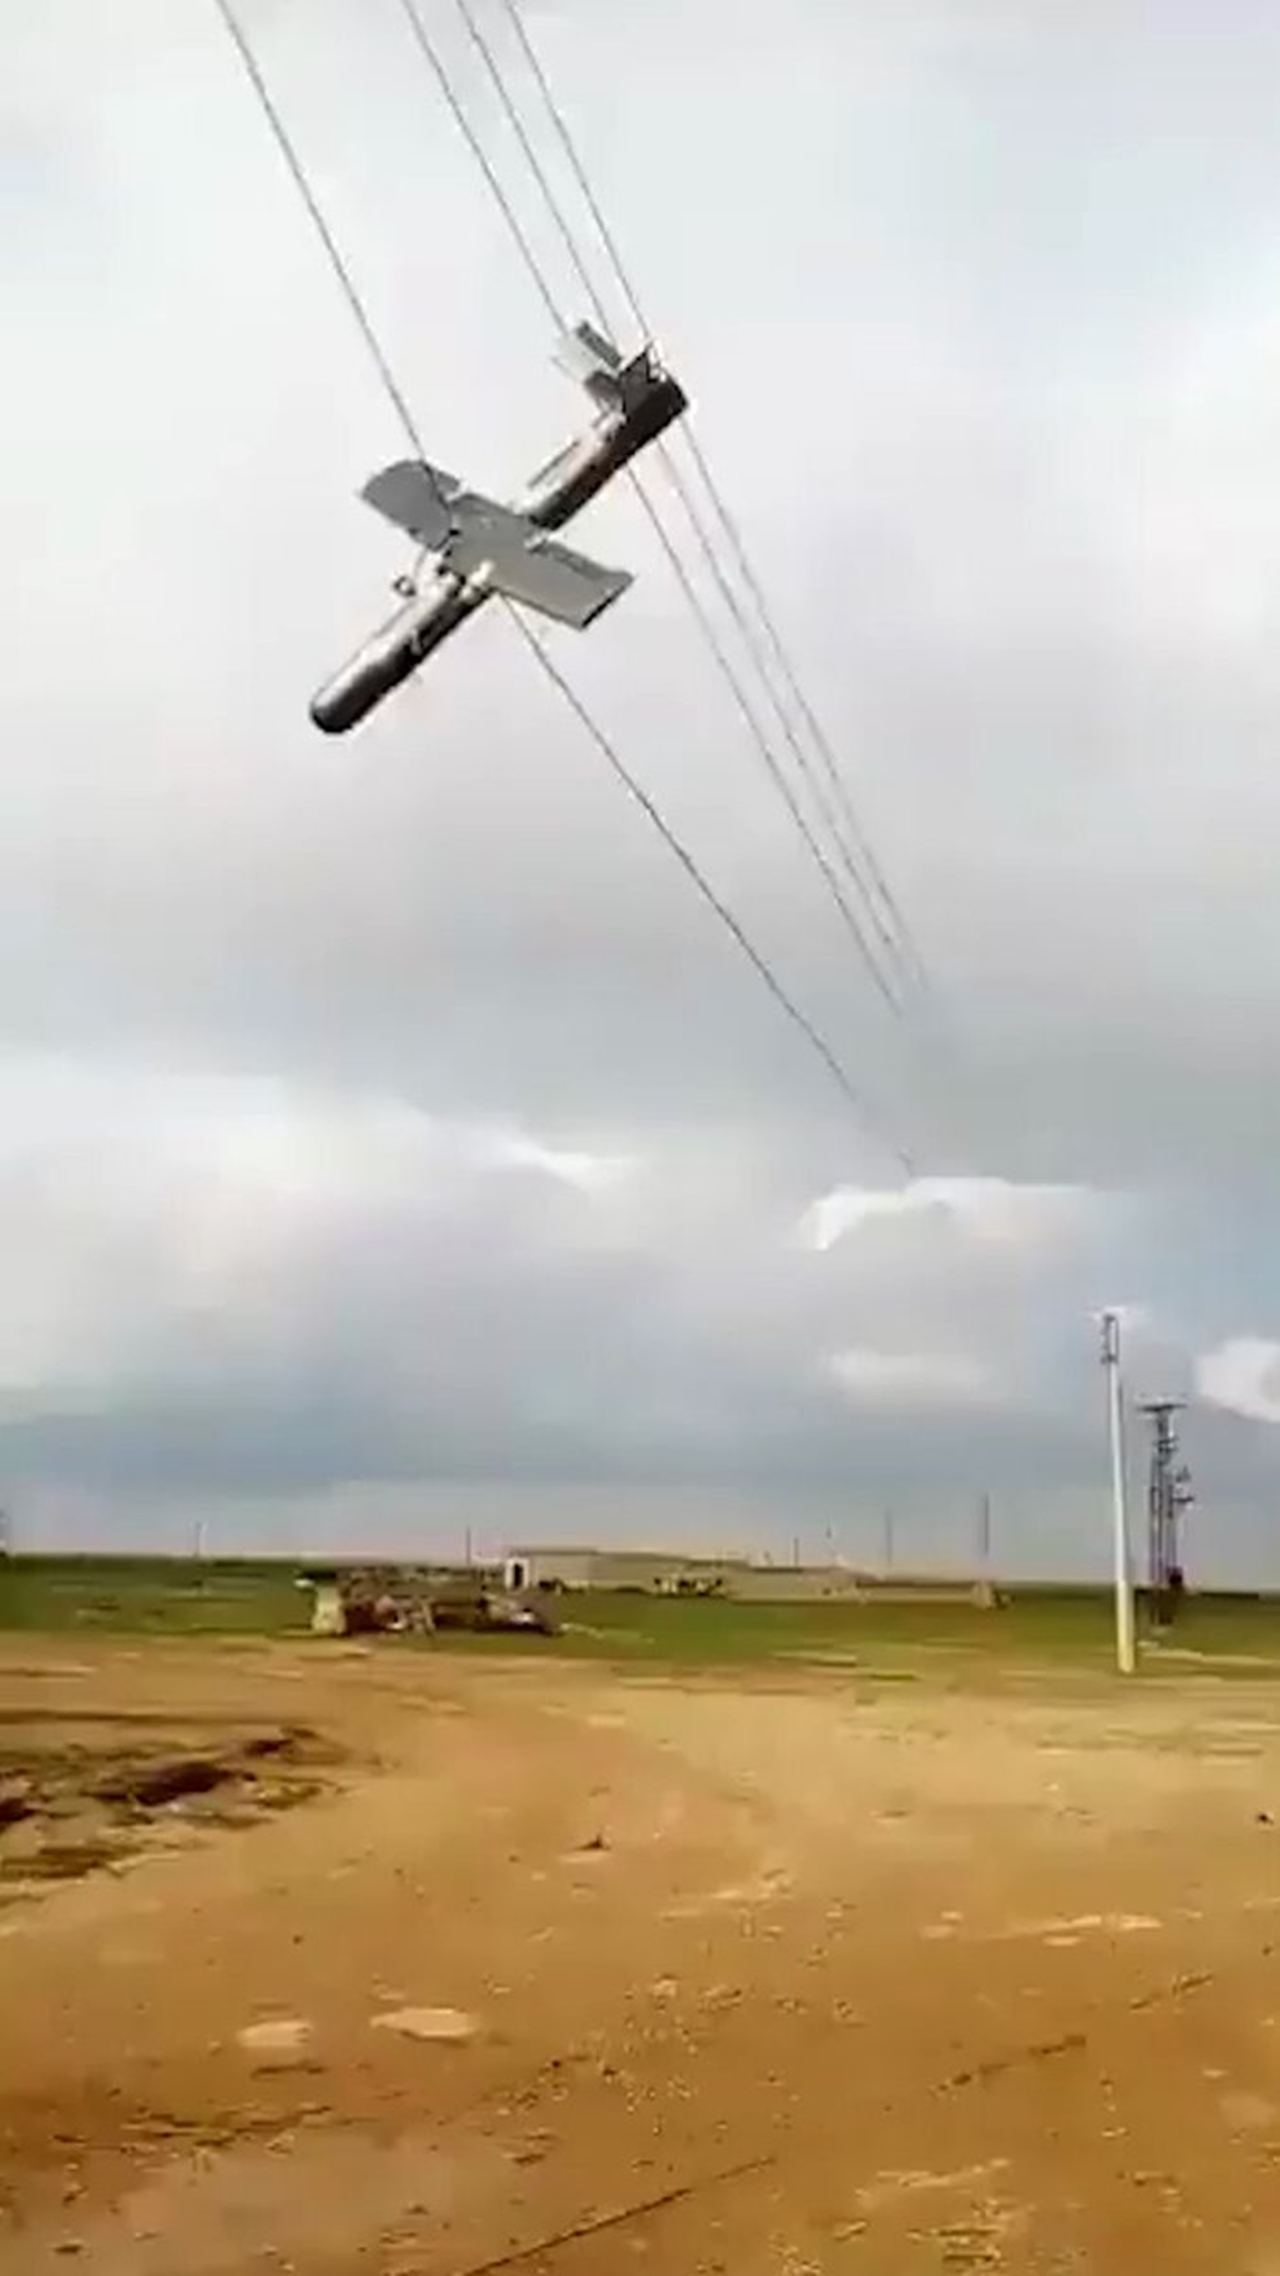 İnsansız hava aracı, Irak'ta elektrik kablolarına dolandı